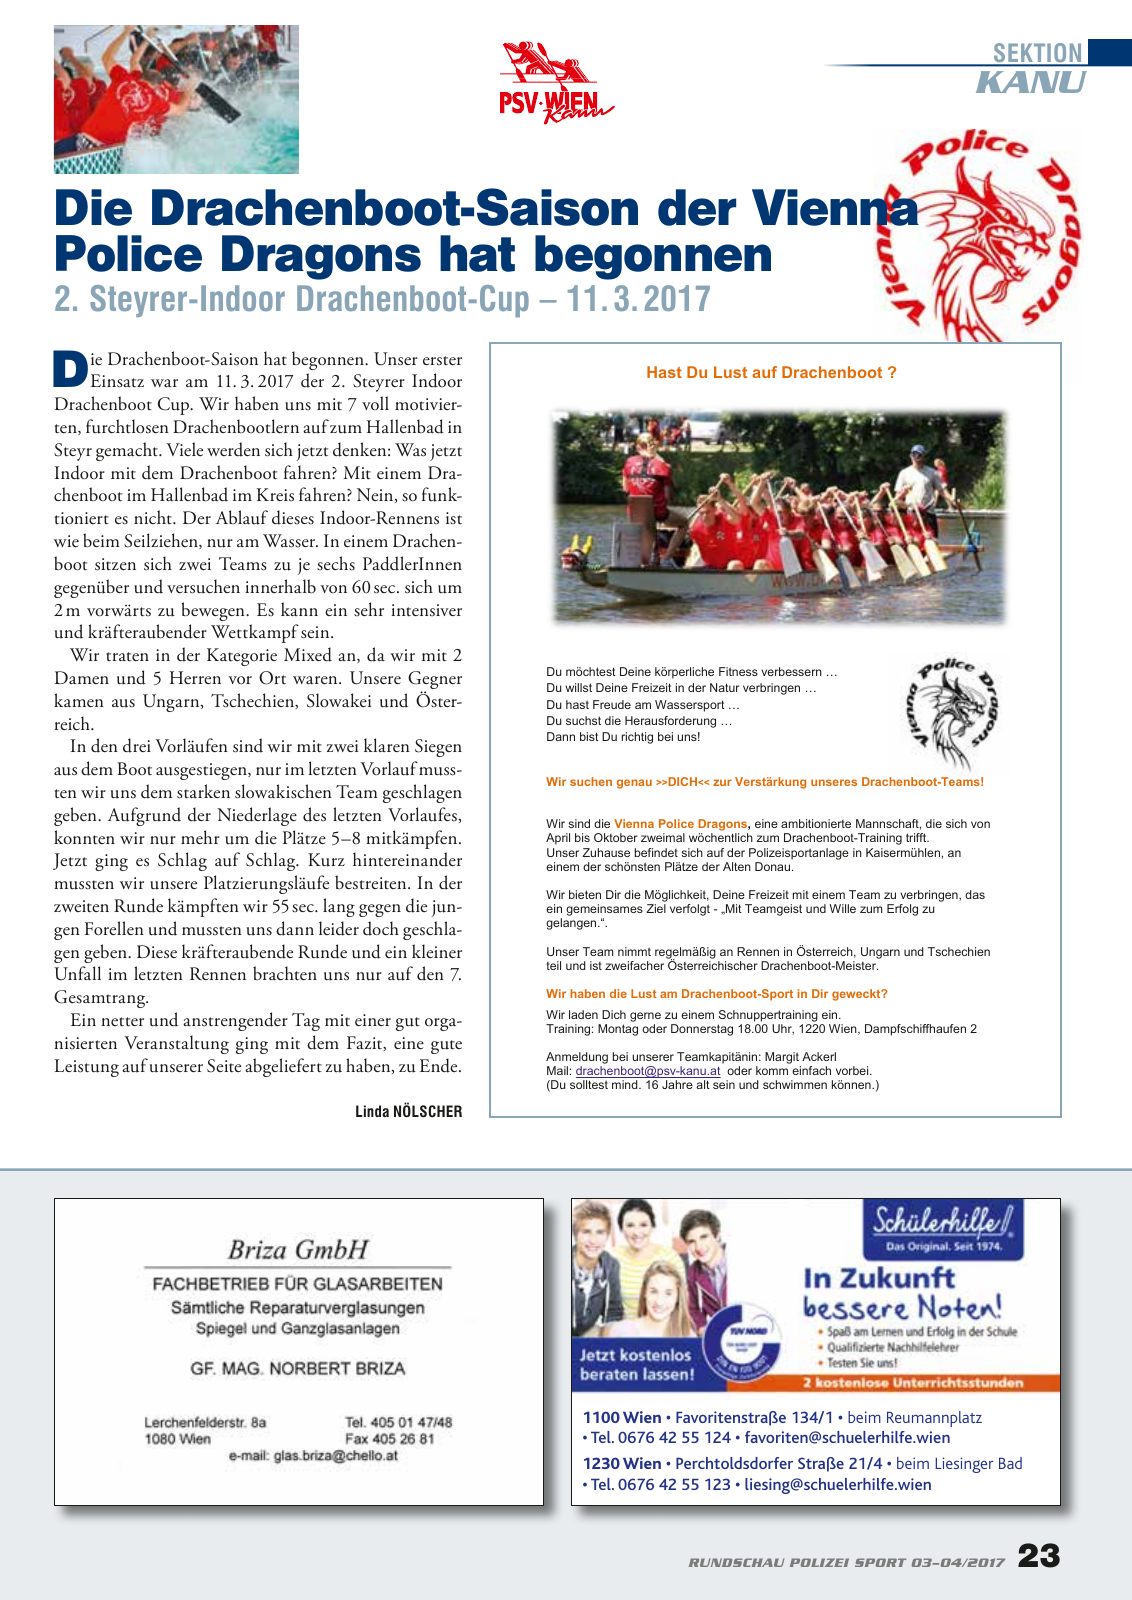 Vorschau Rundschau Polizei Sport 03-04/2017 Seite 23